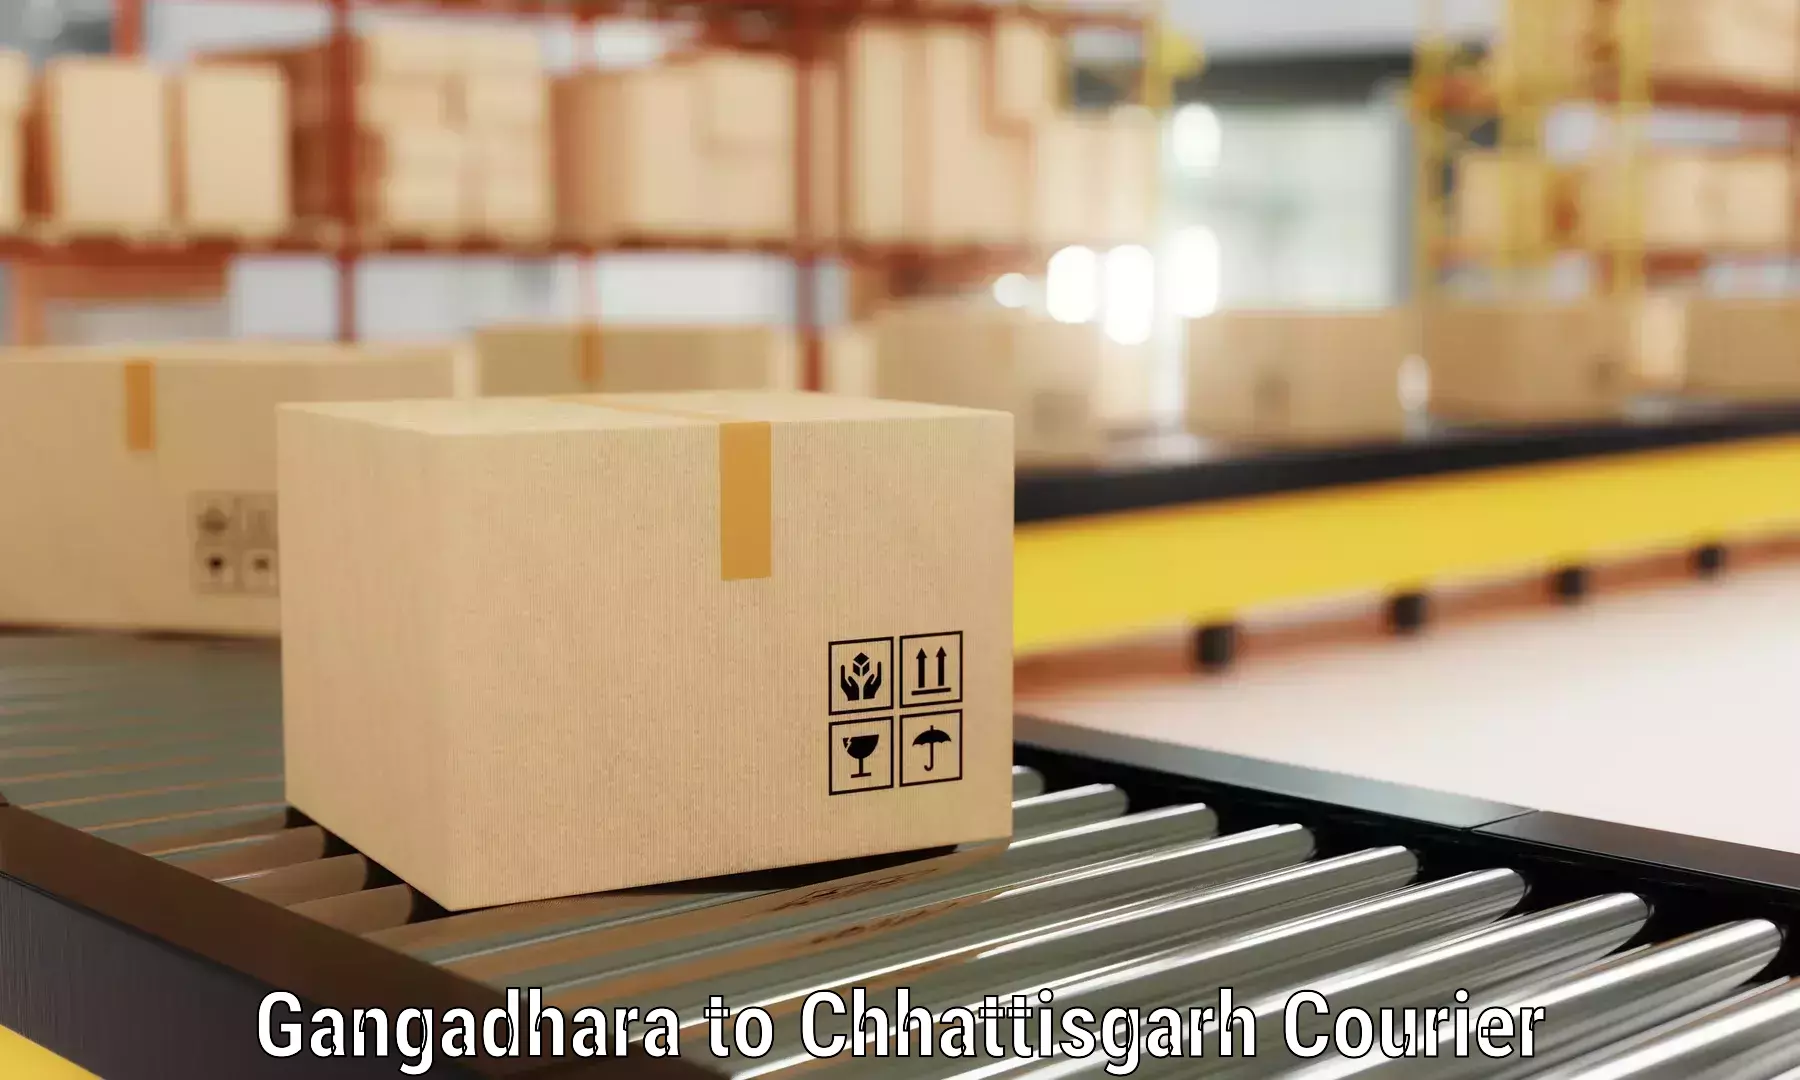 Furniture moving experts Gangadhara to IIT Bhilai